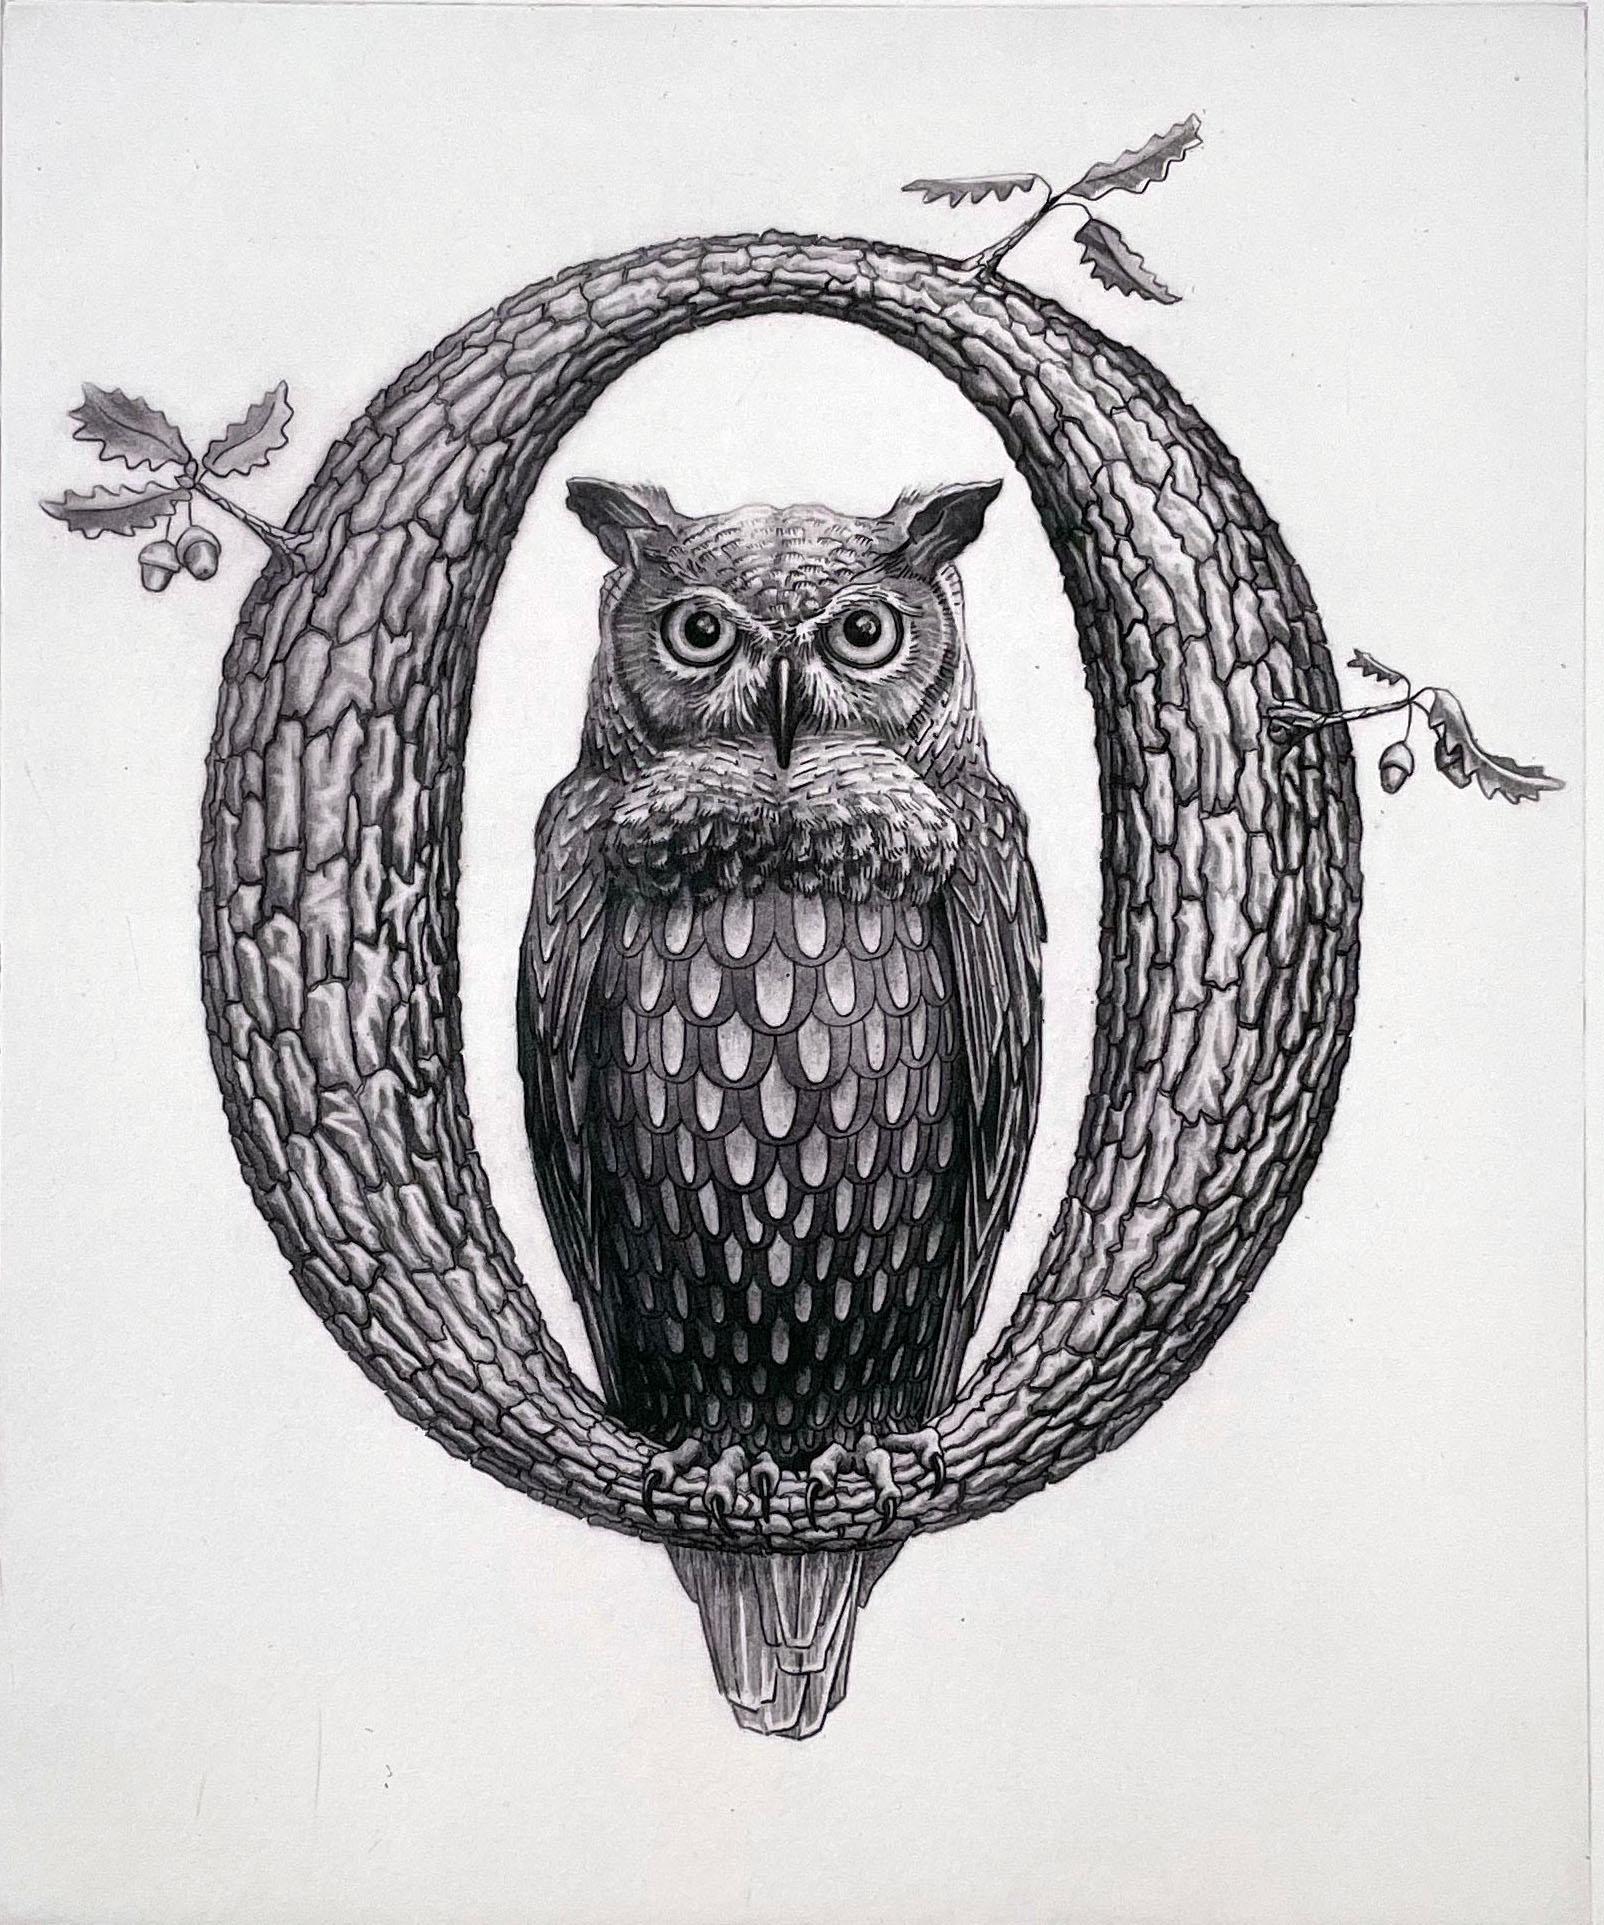 Kelvin Mann Animal Print – "O"